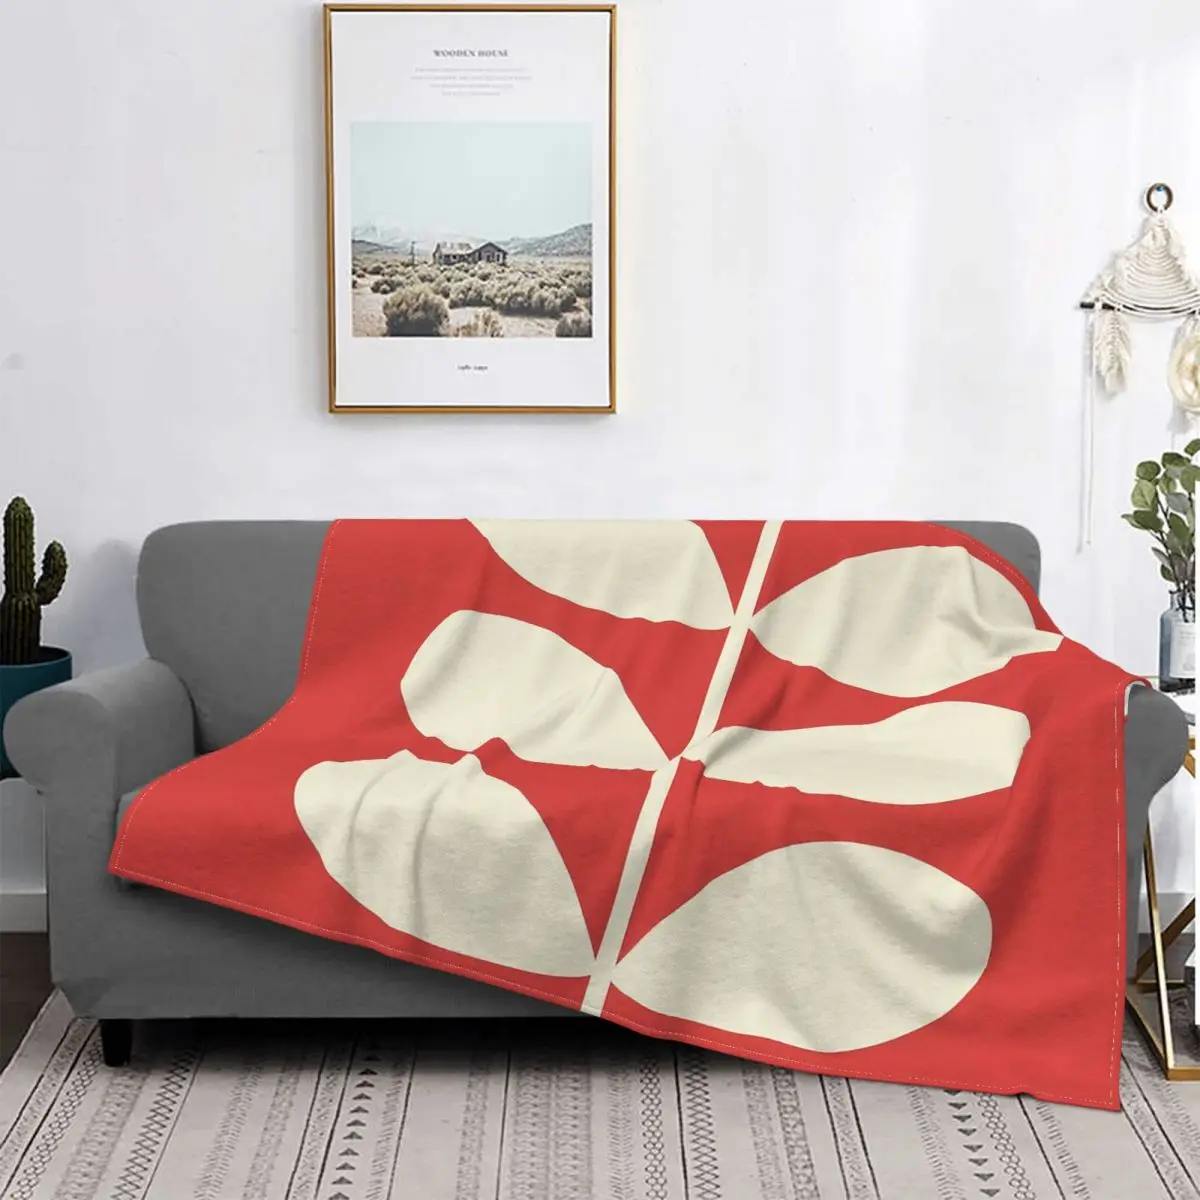 

Одеяло Orla Kiely, Фланелевое текстильное украшение, дышащее ультра-мягкое покрывало для дивана, офиса